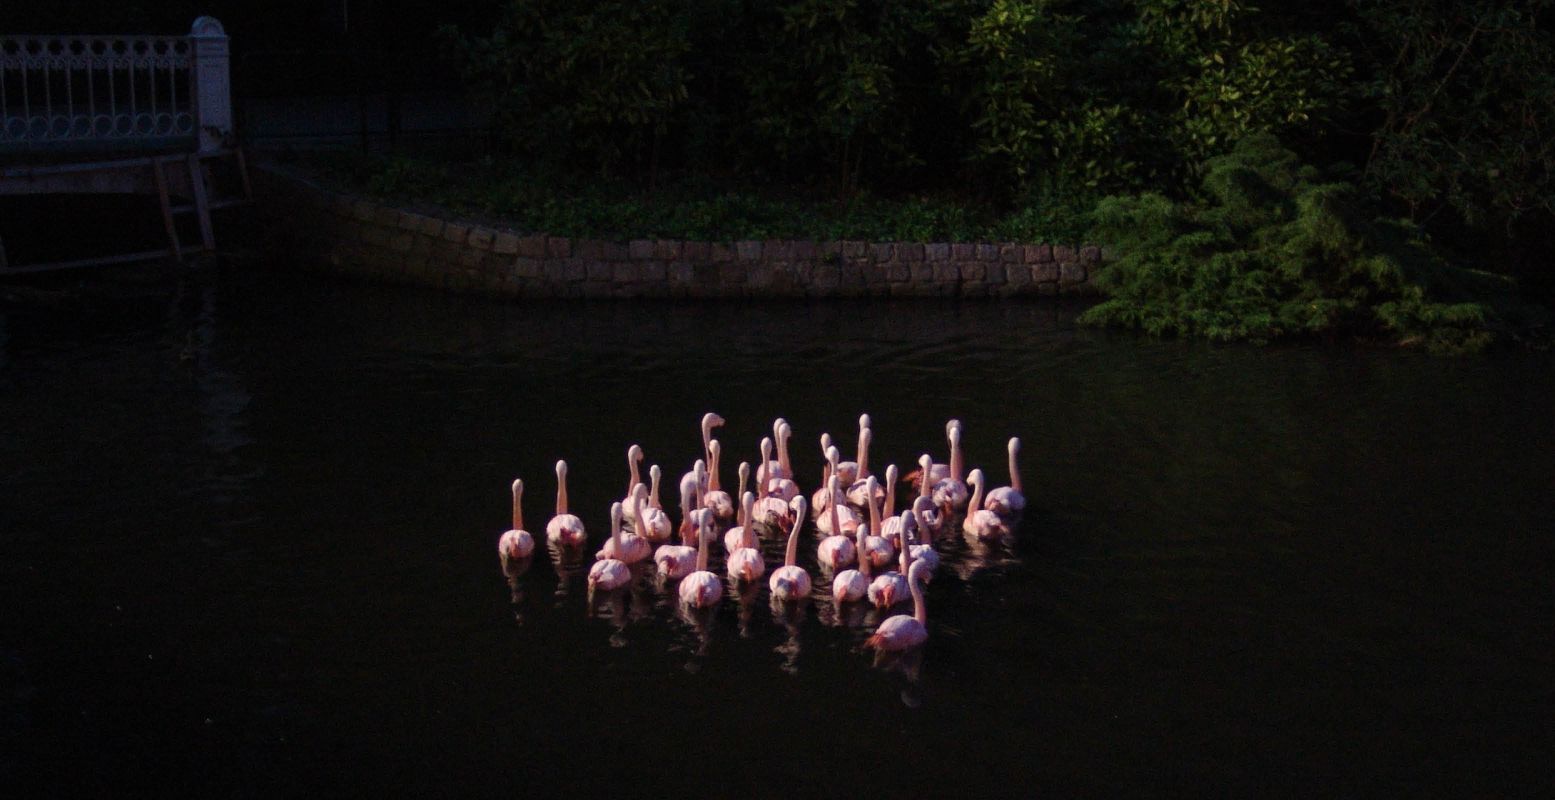 Bewonder slapende flamingo's in ARTIS. Foto: Goos van der Sijde